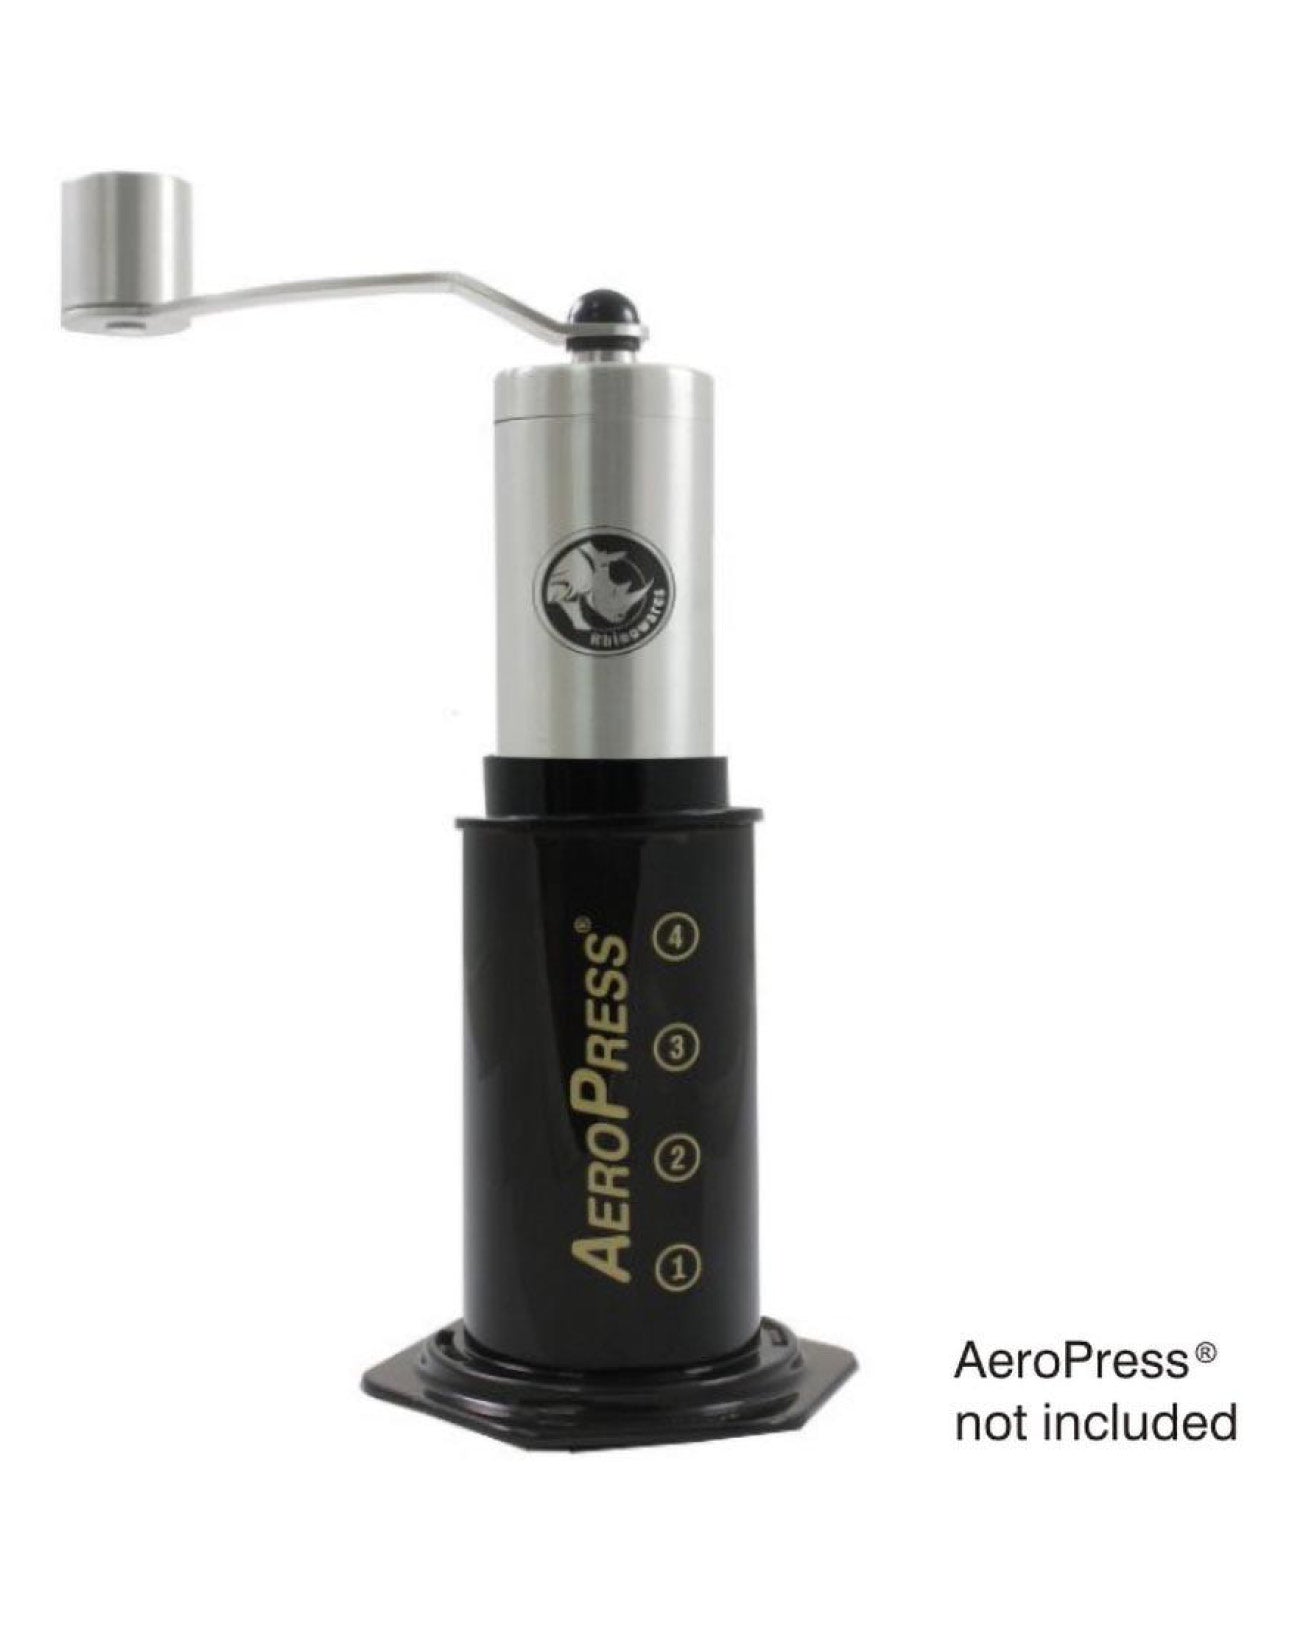 Rhino Handmühle klein mit Adapter für Aeropress